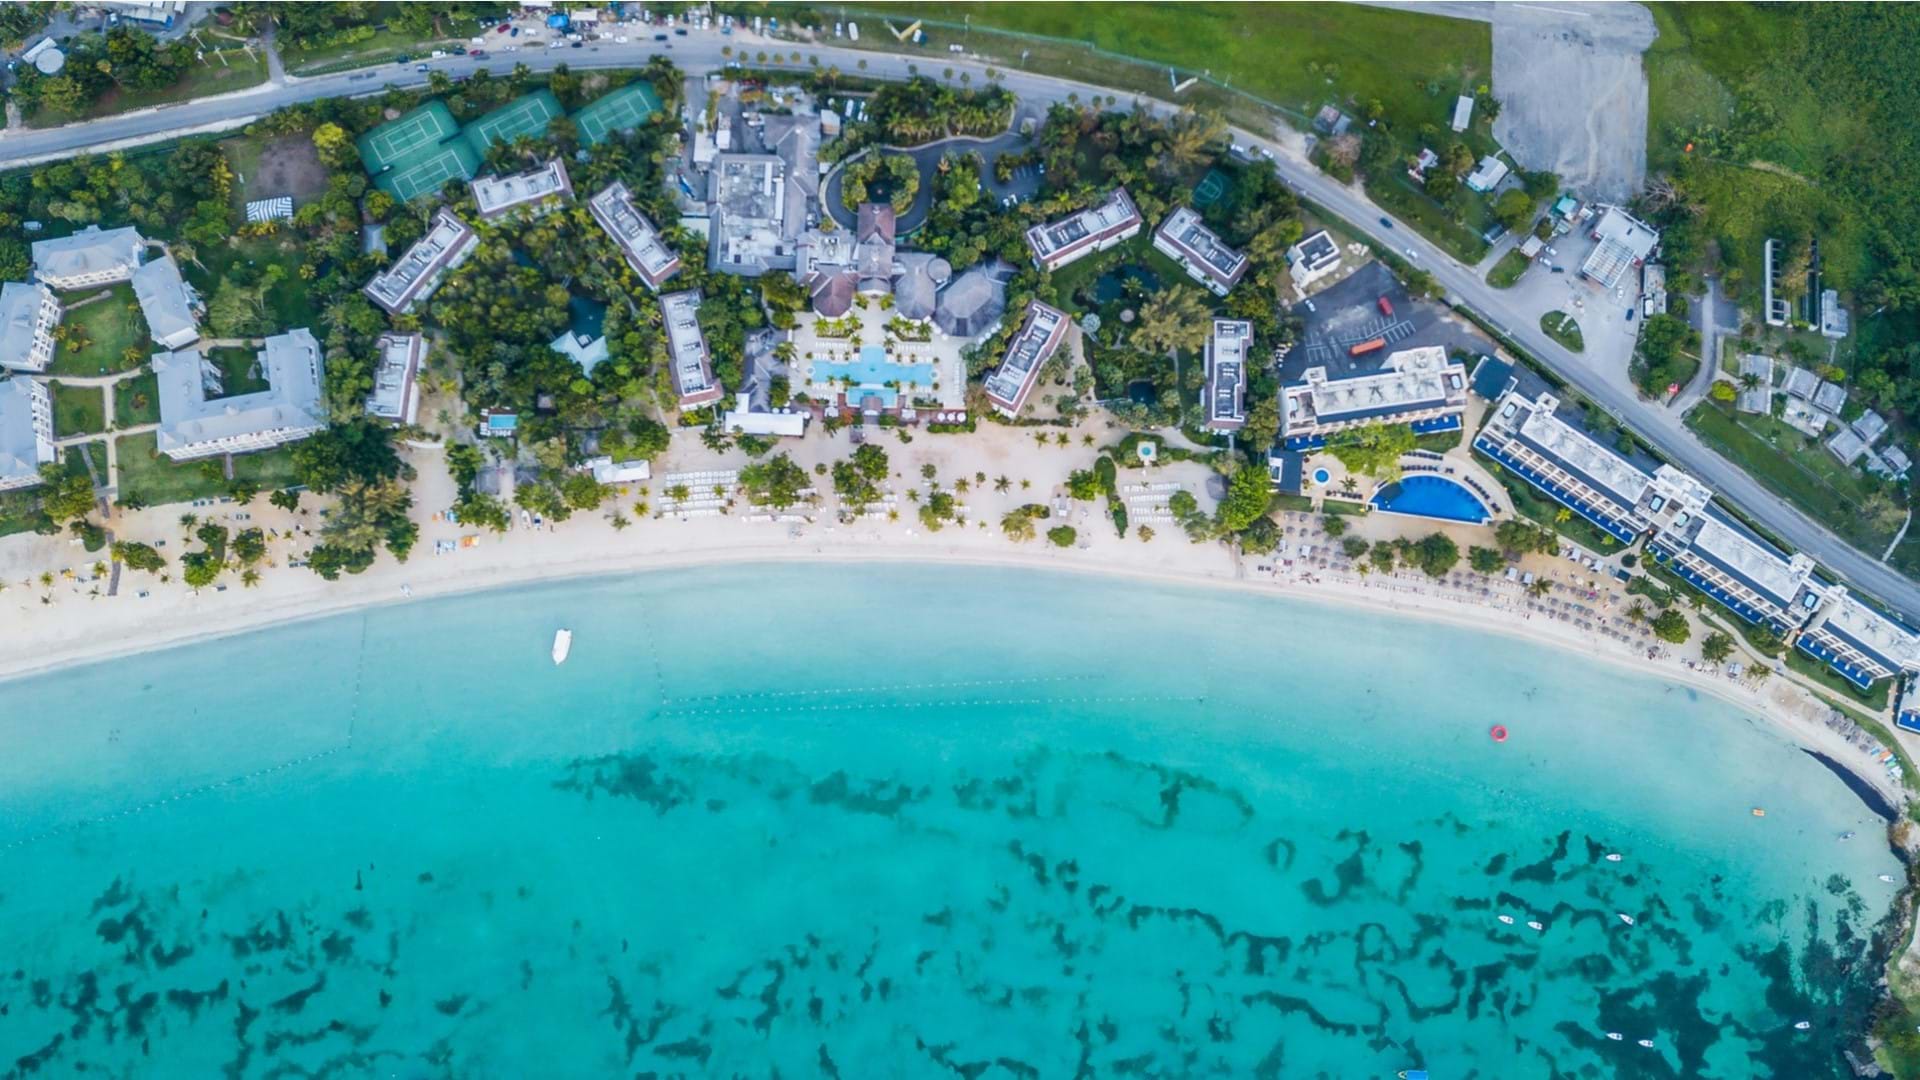 Jedan od mnogobrojnih rizort hotela na Jamajci. Turisti često odsedaju u ovakvim hotelima koji imaju bazene, teniske terene, sopstvenu privatnu plažu i all inclusive uslugu.